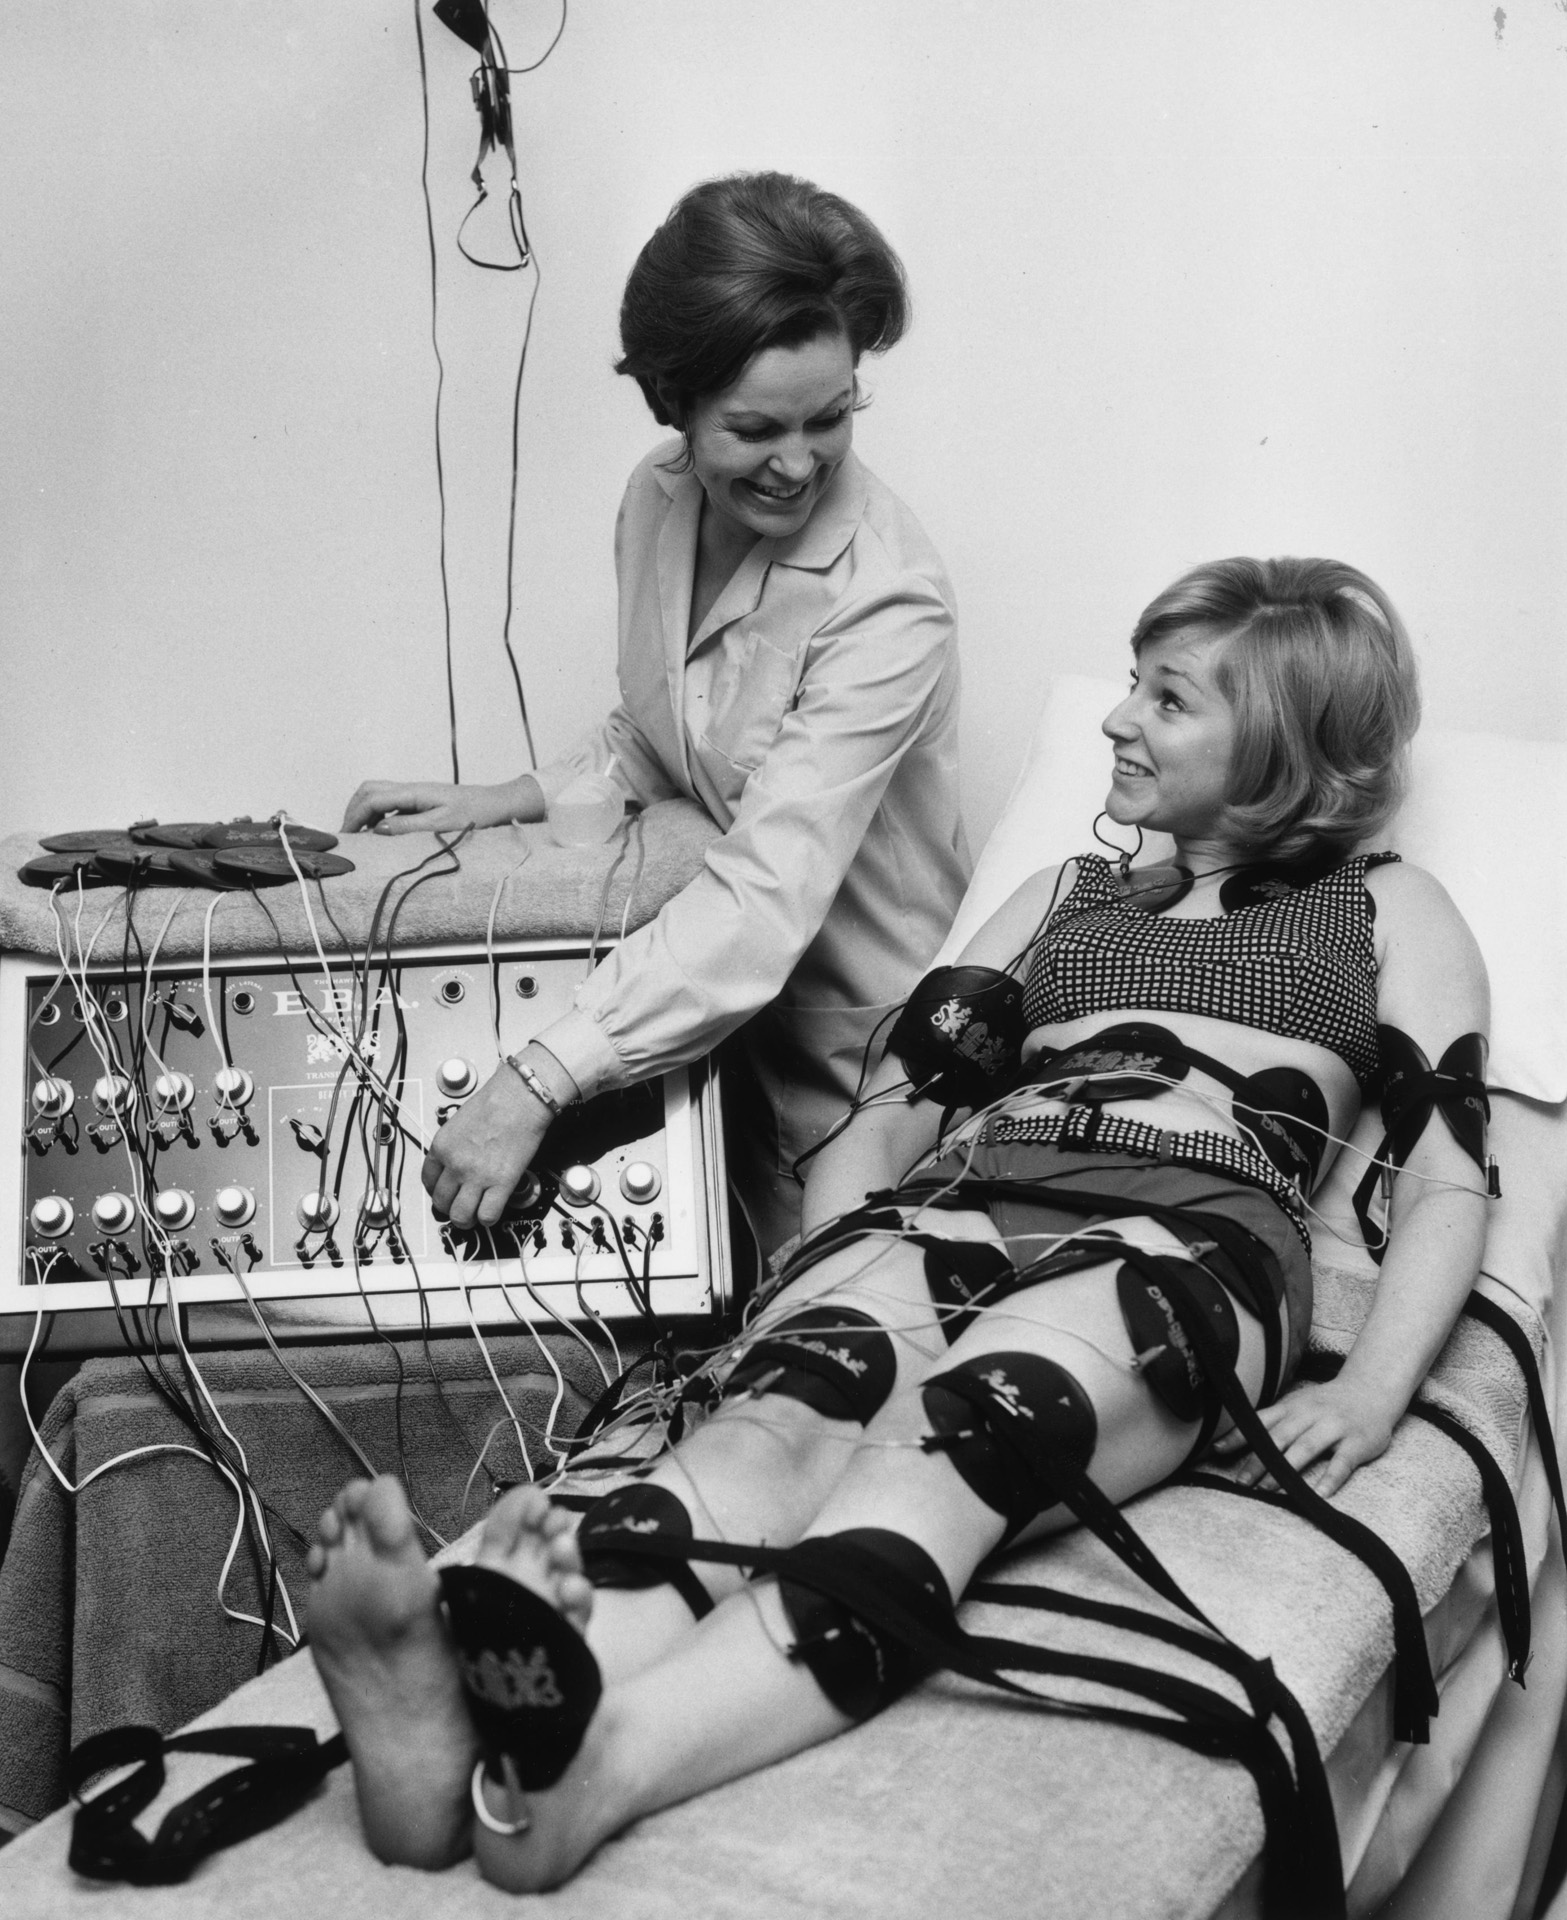 Paula Byrne egy elektronikus karcsúsító eszközt mutat be Alison Frazer színésznőnek. Az Alison testén található párnák enyhe elektromos árammal stimulálják az izmait